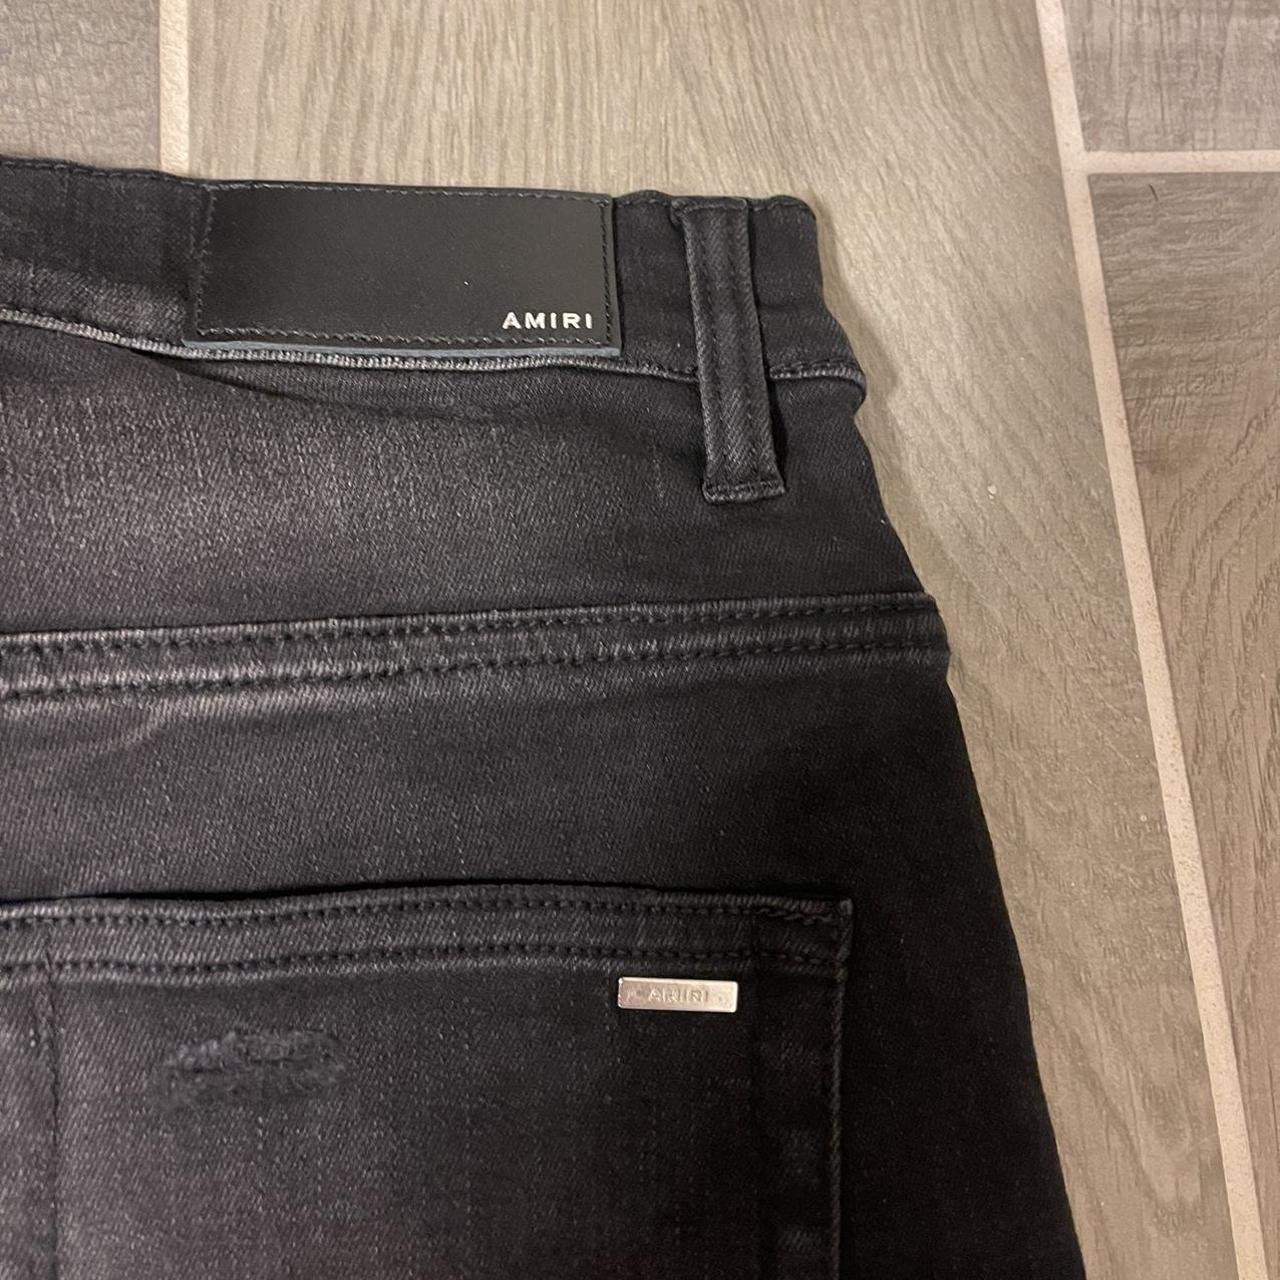 Amiri Watercolor logo-print skinny jeans retail... - Depop